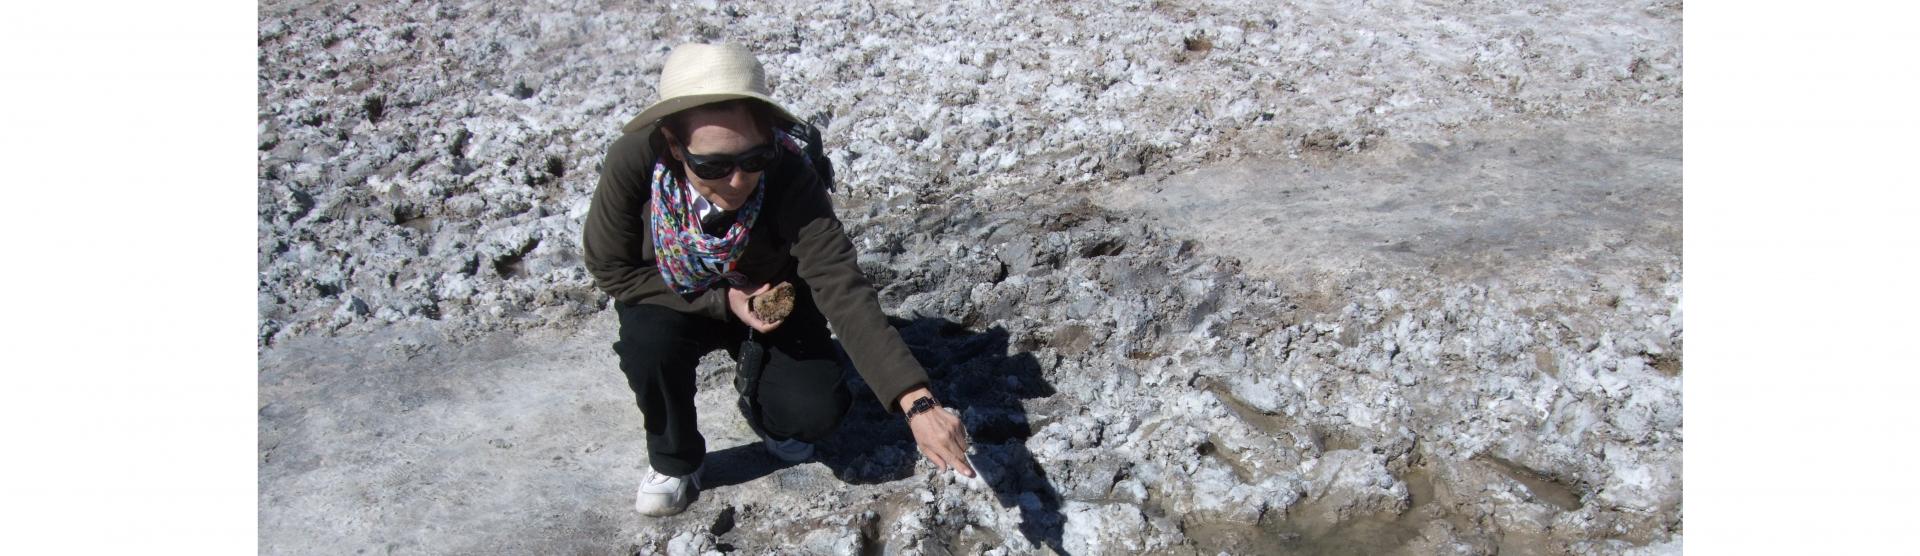 Depositos de halitas (NaCl) colonizadas; desierto de Atacama